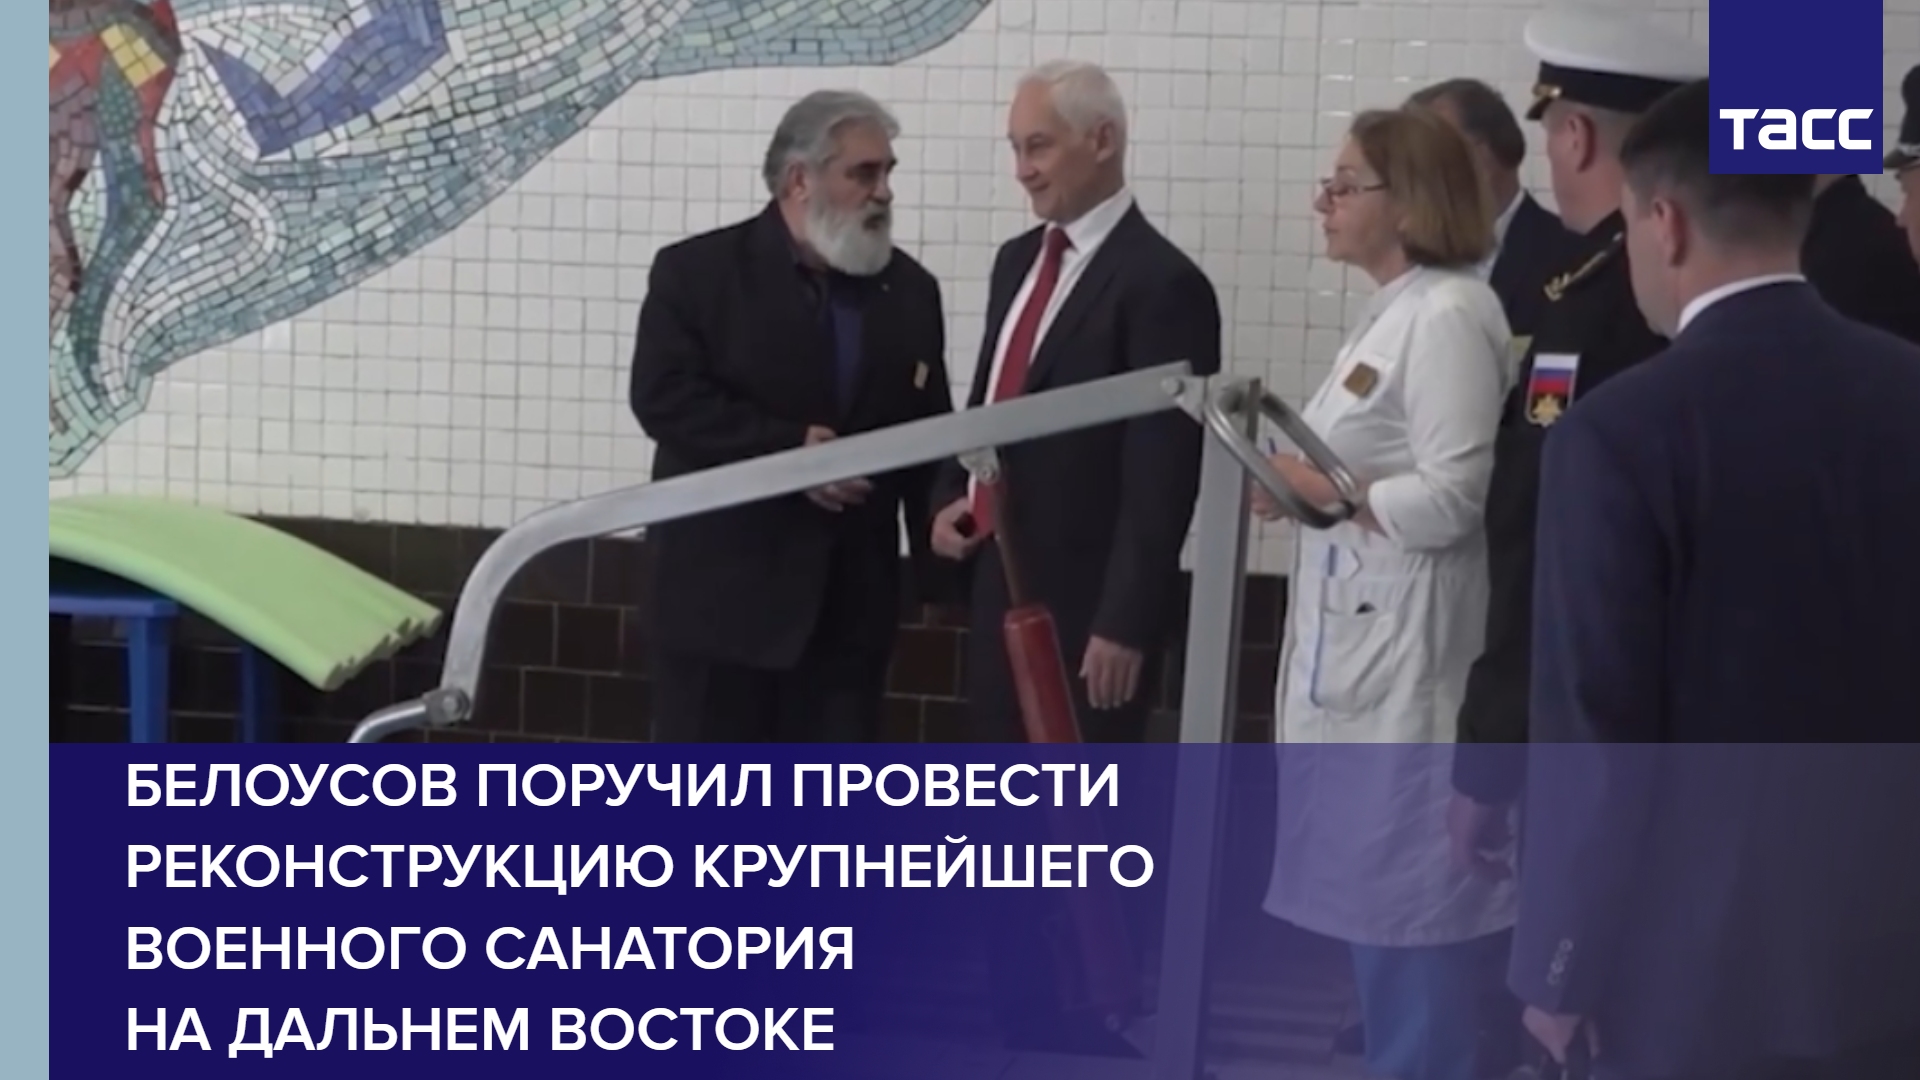 Белоусов поручил провести реконструкцию крупнейшего военного санатория на Дальнем Востоке